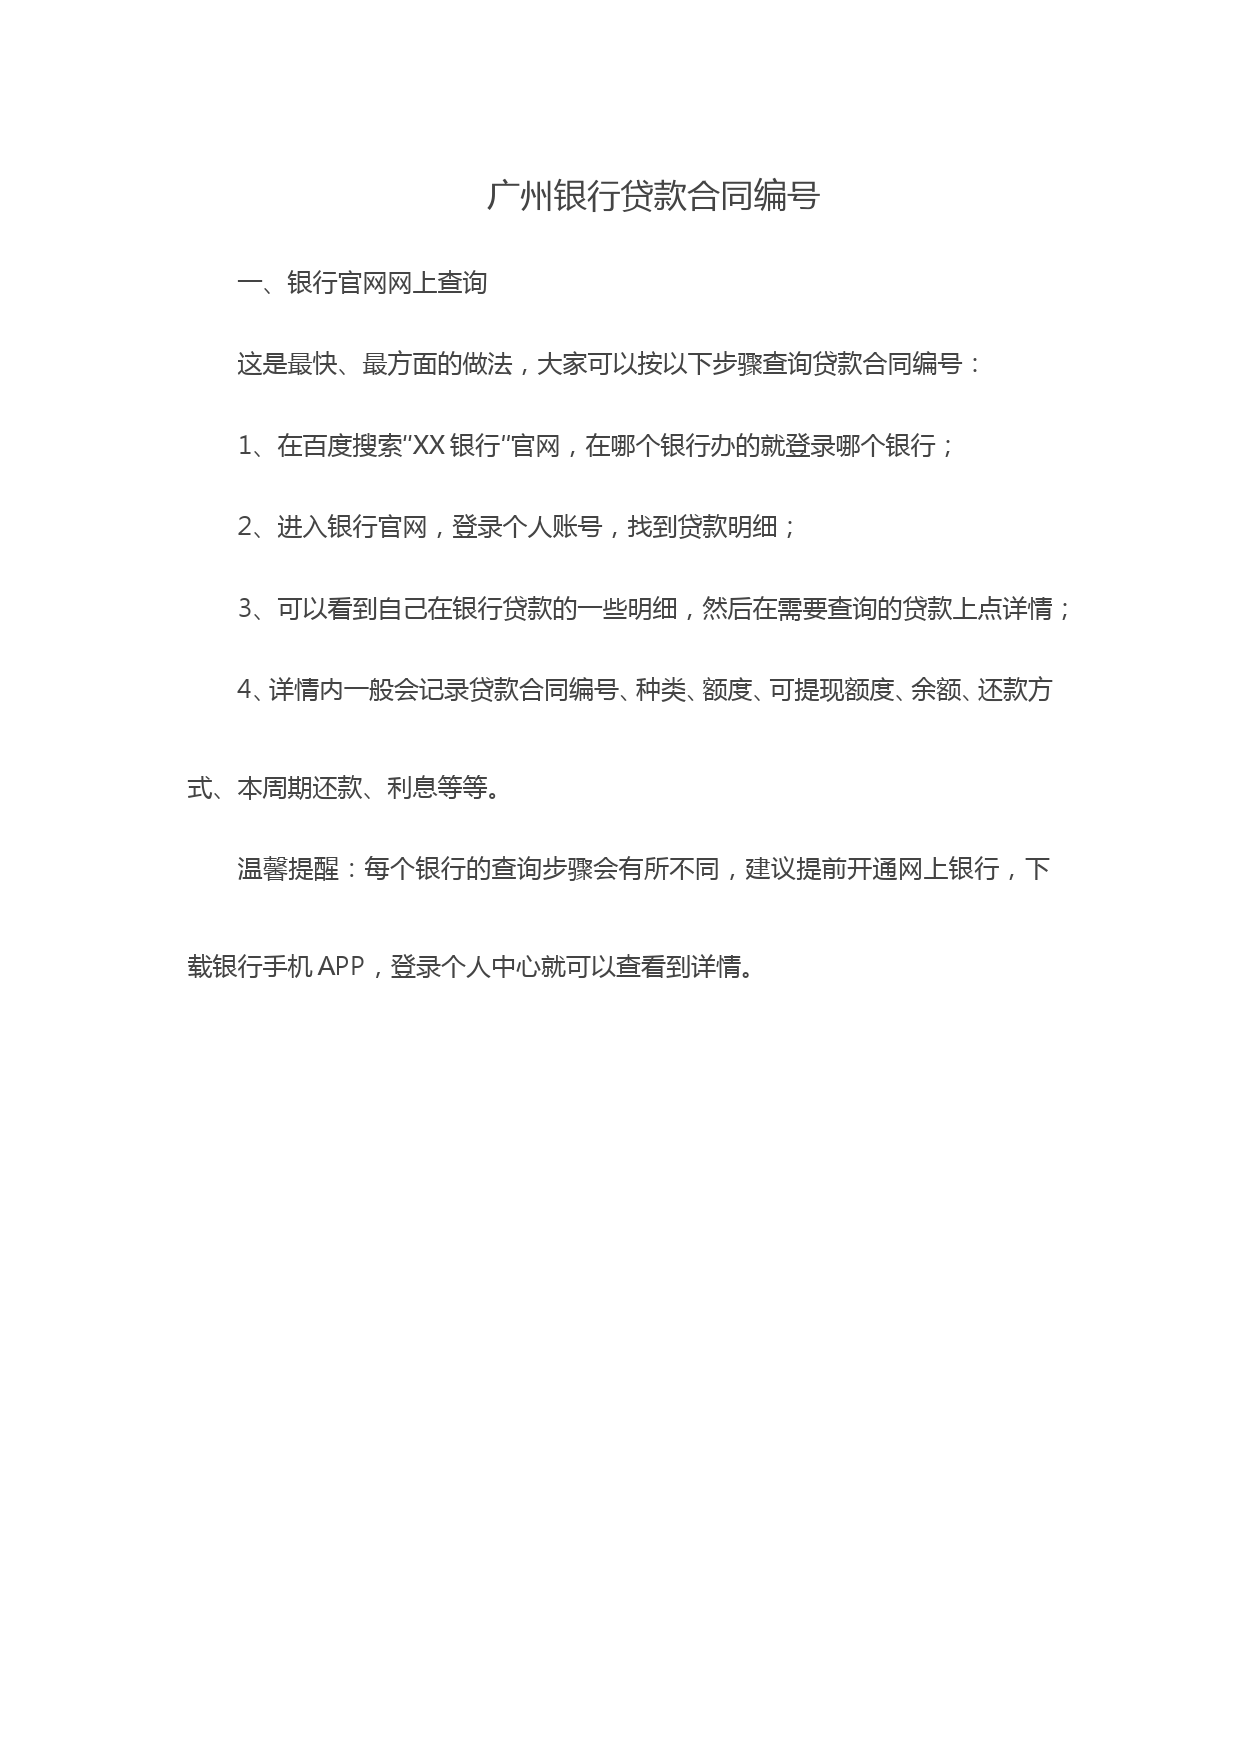 广州银行贷款合同编号